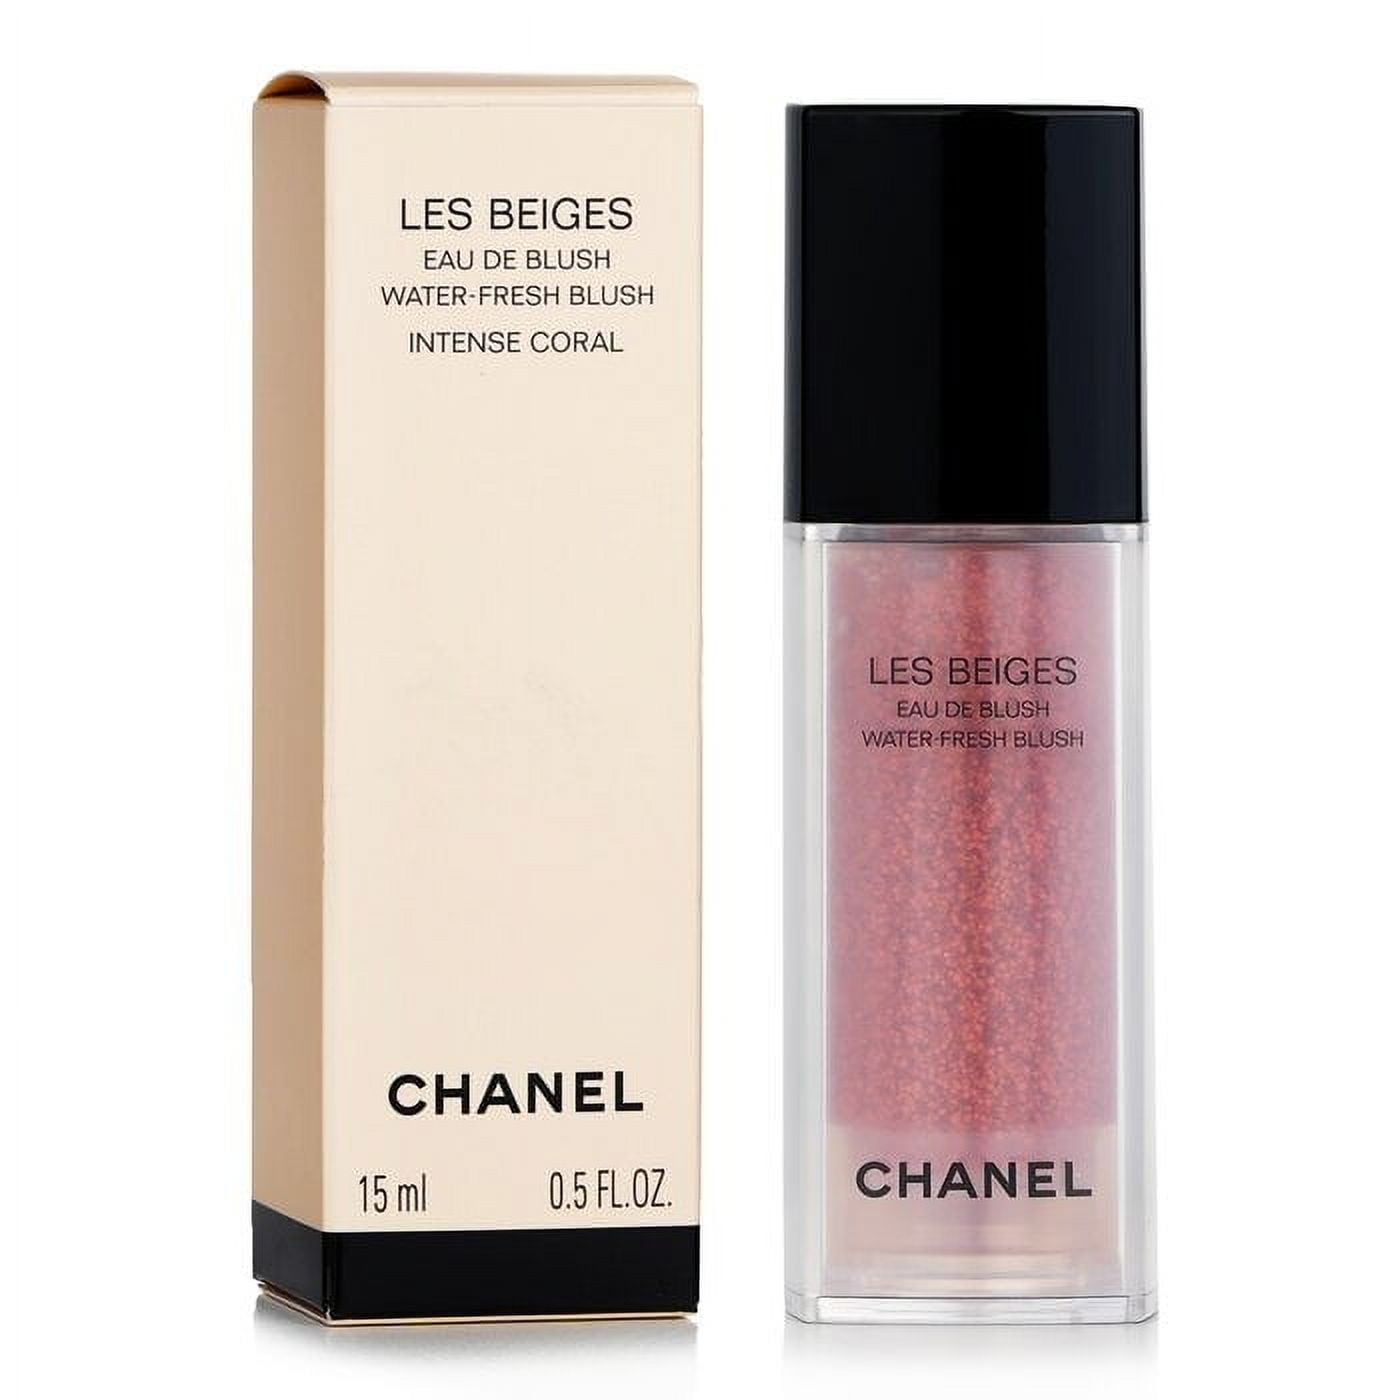 Chanel Water Fresh Blush / Eau de Blush Deep Apricot, Deep Bronze 